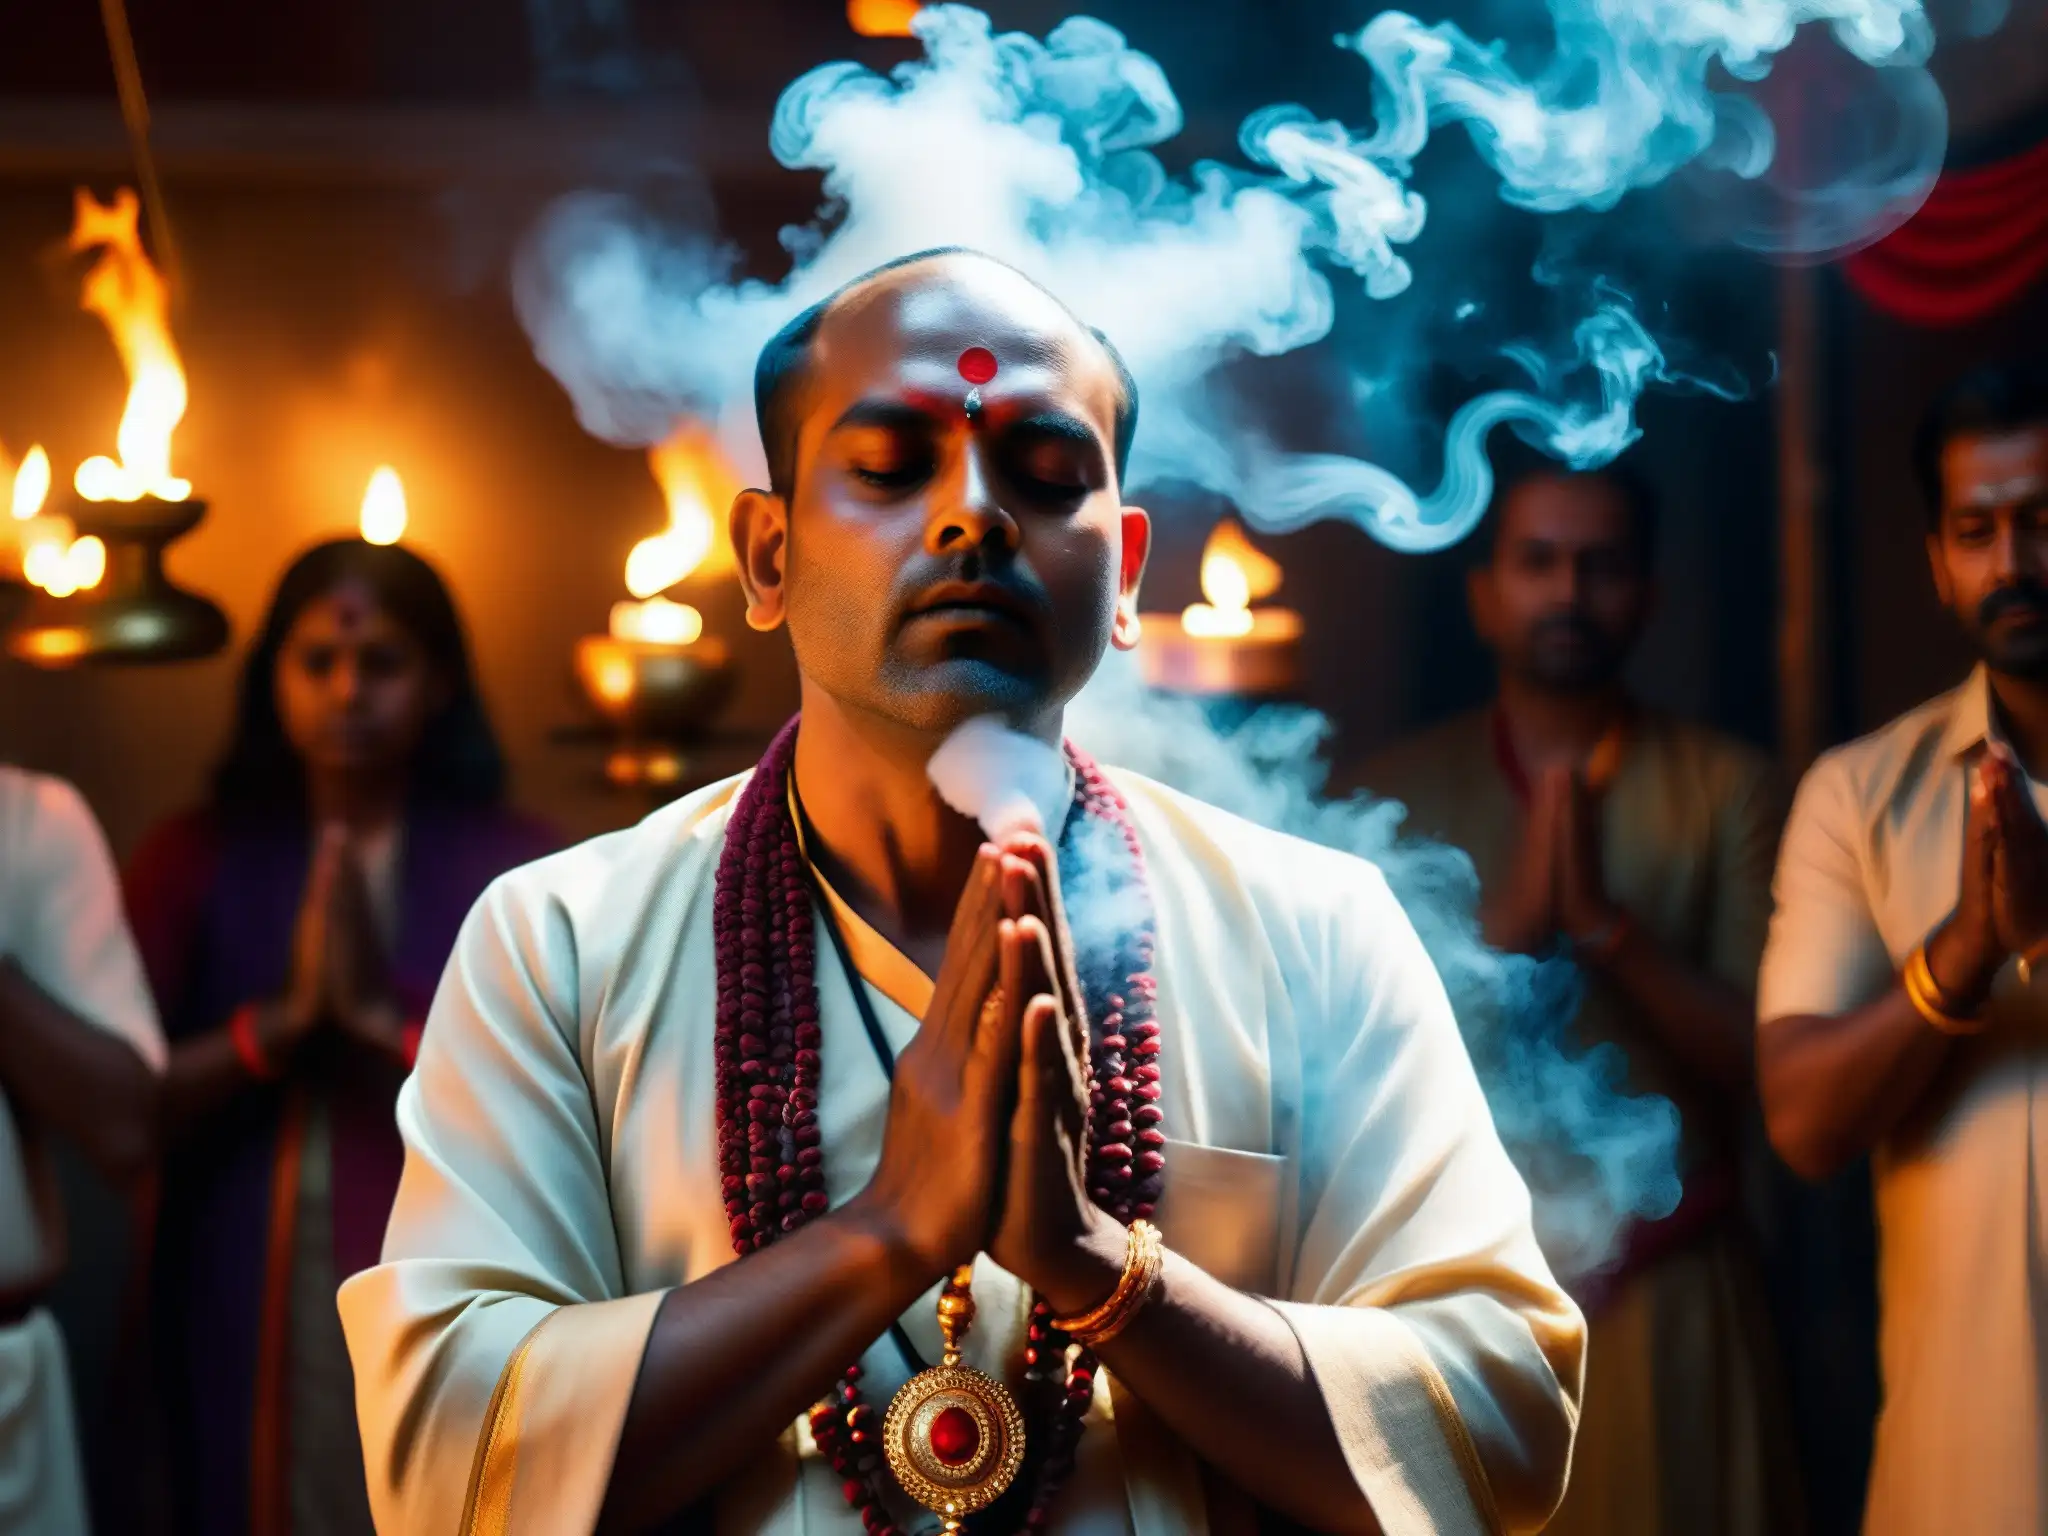 Un sacerdote hindú realiza un exorcismo entre humo de incienso y luz de velas, enfrentando posesiones demoníacas tradicionales hindúes